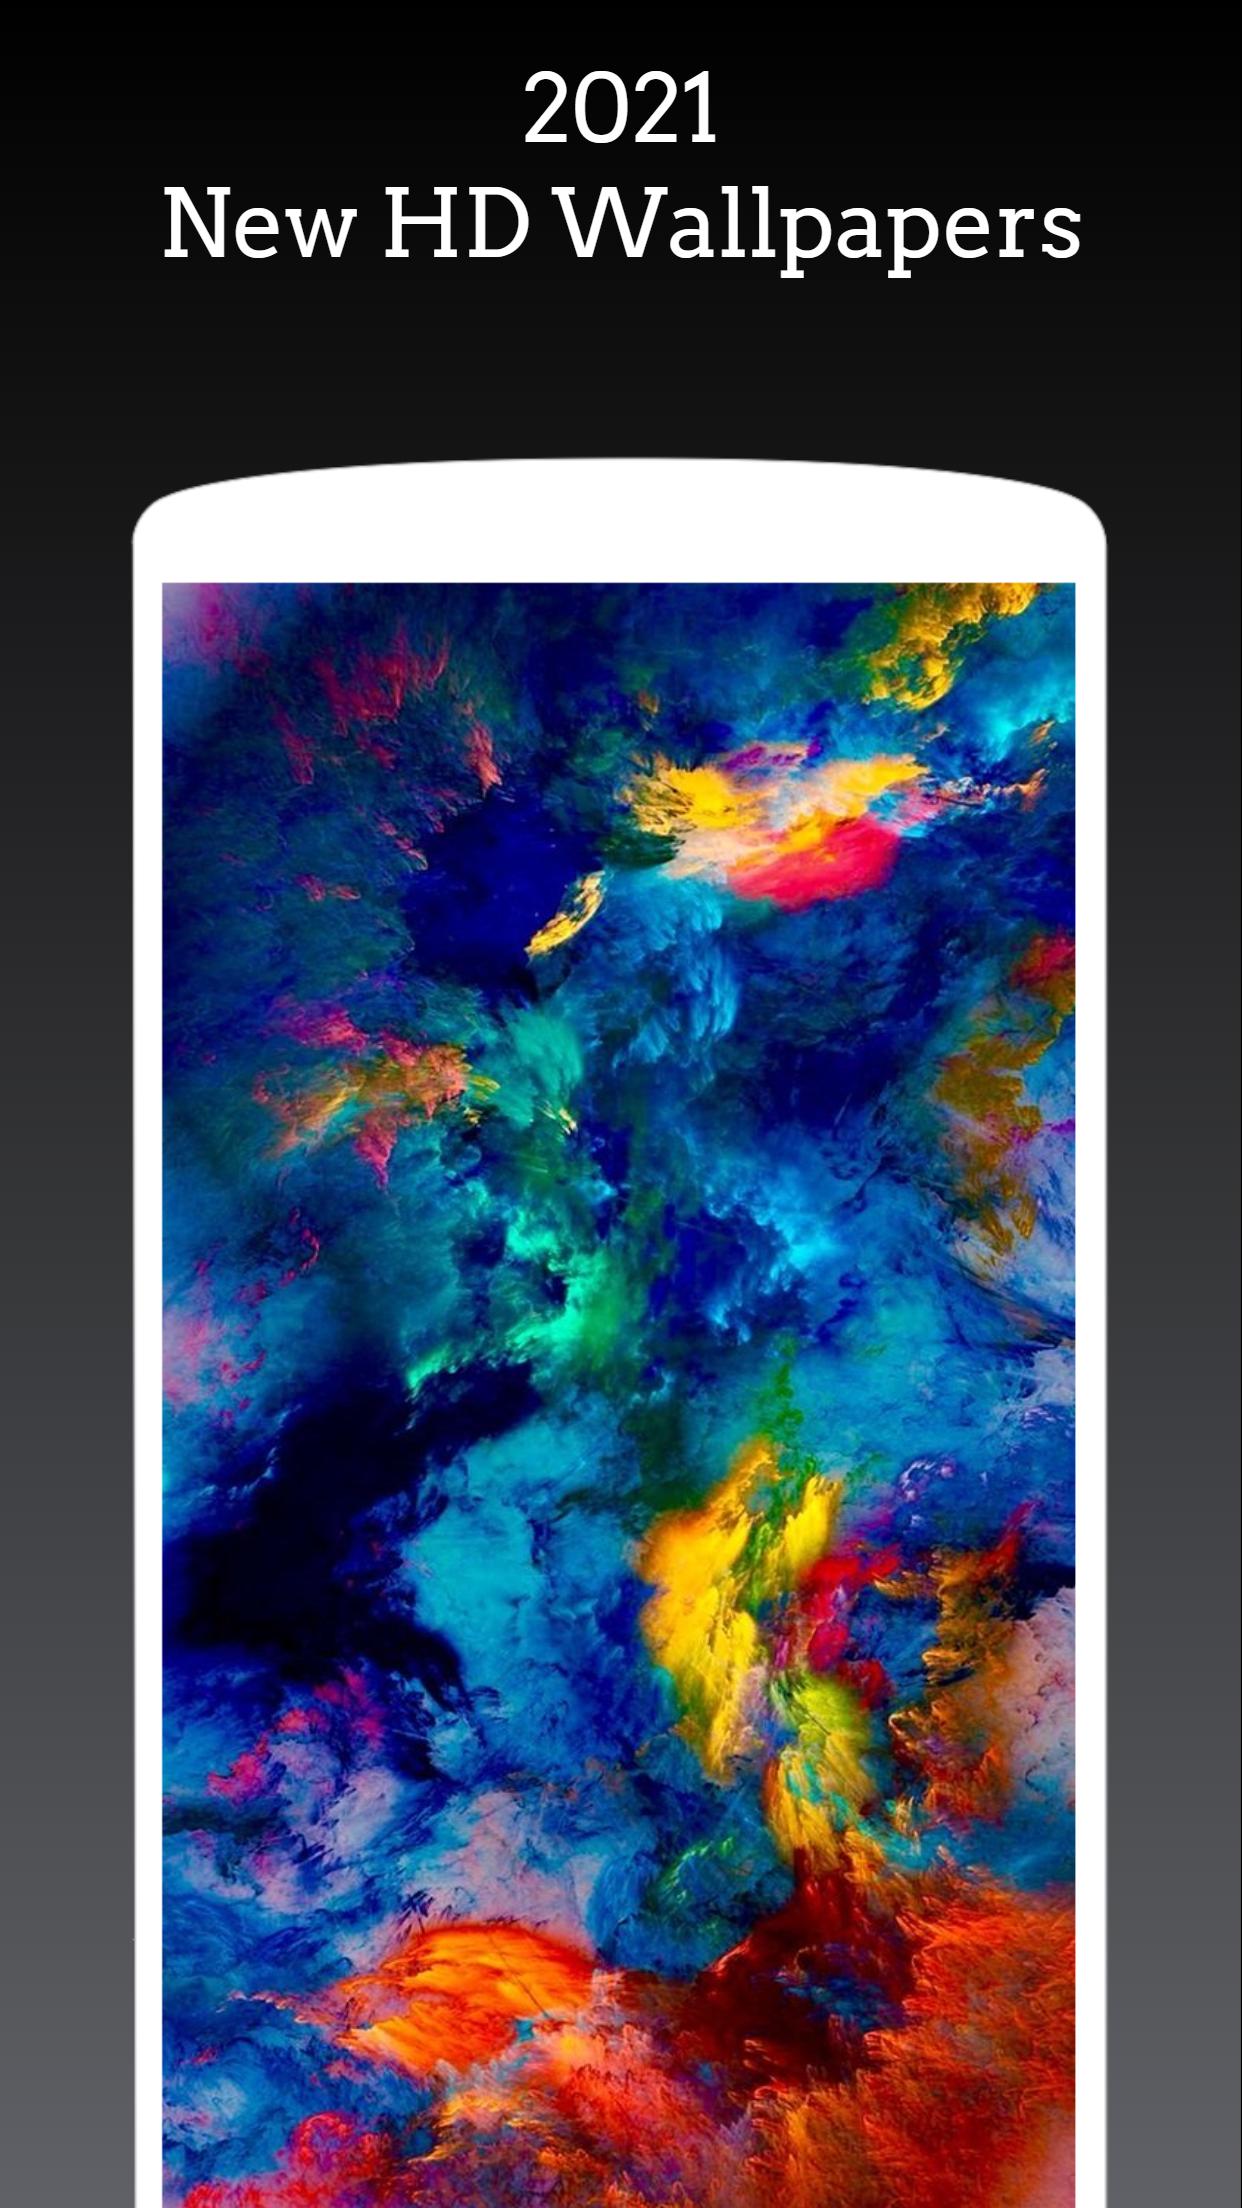 Với APK Wallpapers For iPhone 12, bạn sẽ được trải nghiệm những bức hình nền đẹp và độc đáo nhất. Tất cả đều được thiết kế và tối ưu hóa cho iPhone 12, để giúp bạn tận hưởng được trọn vẹn những tính năng tuyệt vời của sản phẩm.